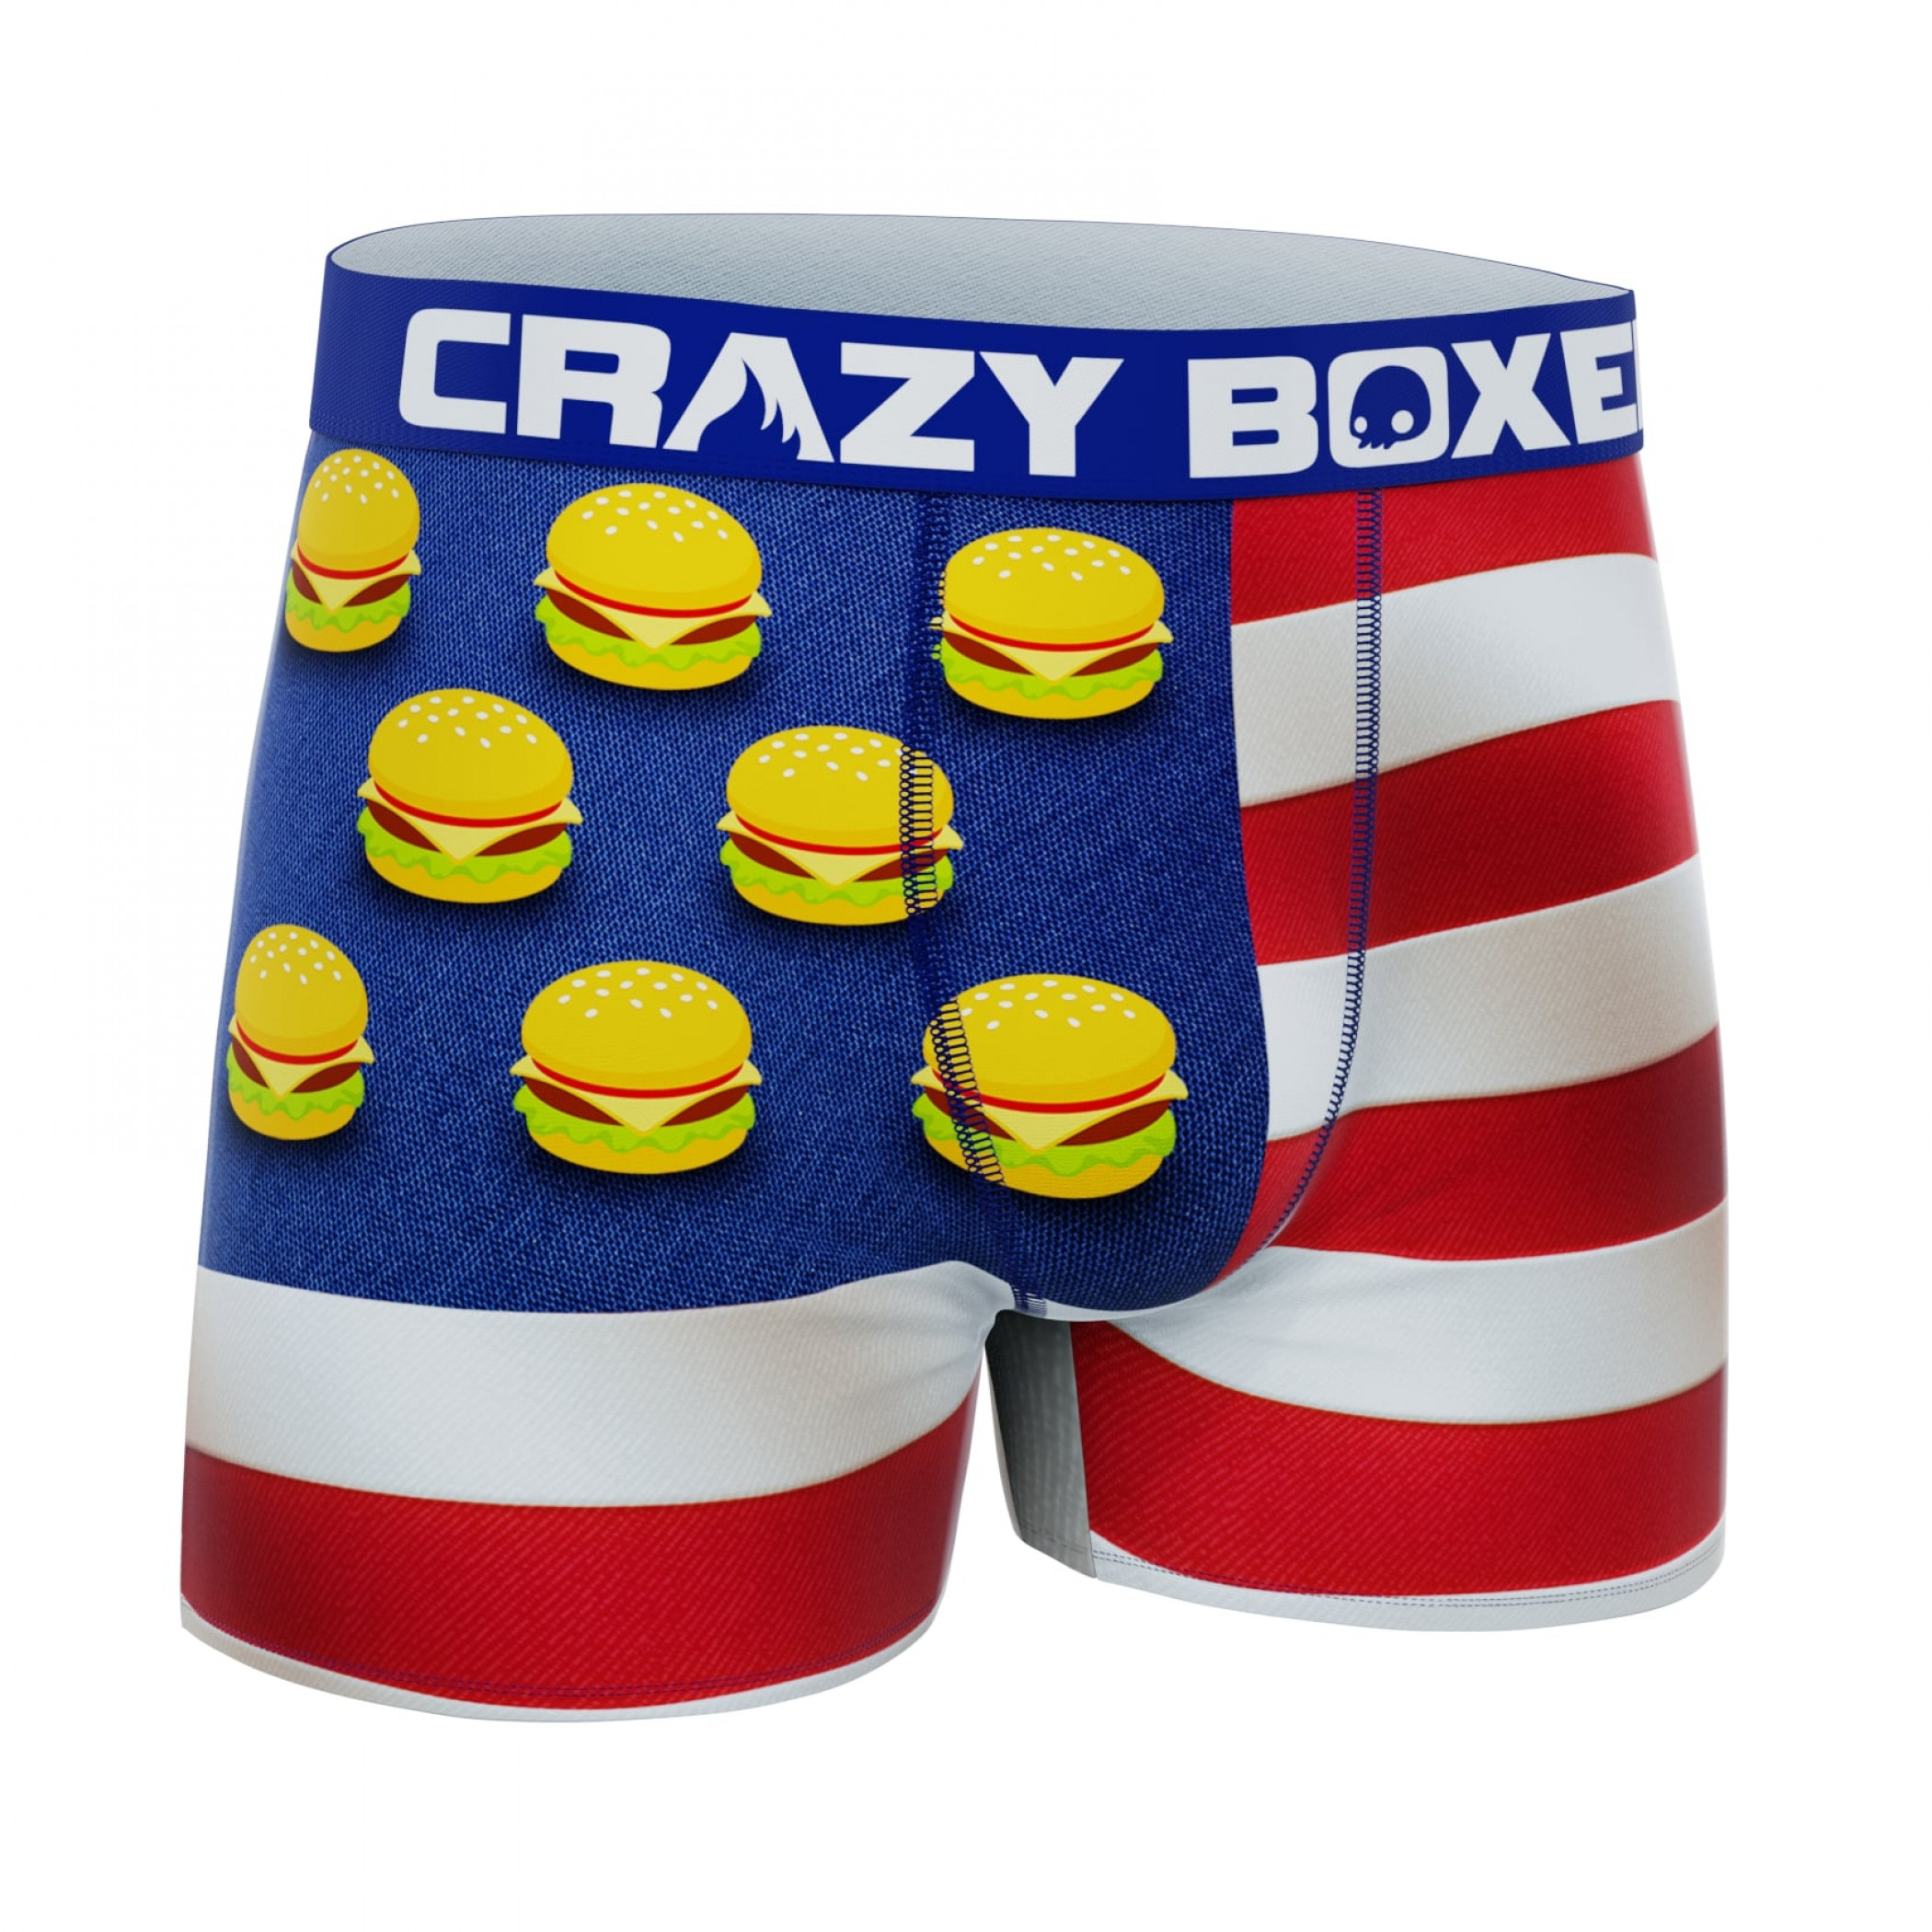 Buy Crazy Boxer SpongeBob SquarePants Halloween Boxers in Novelty Packaging